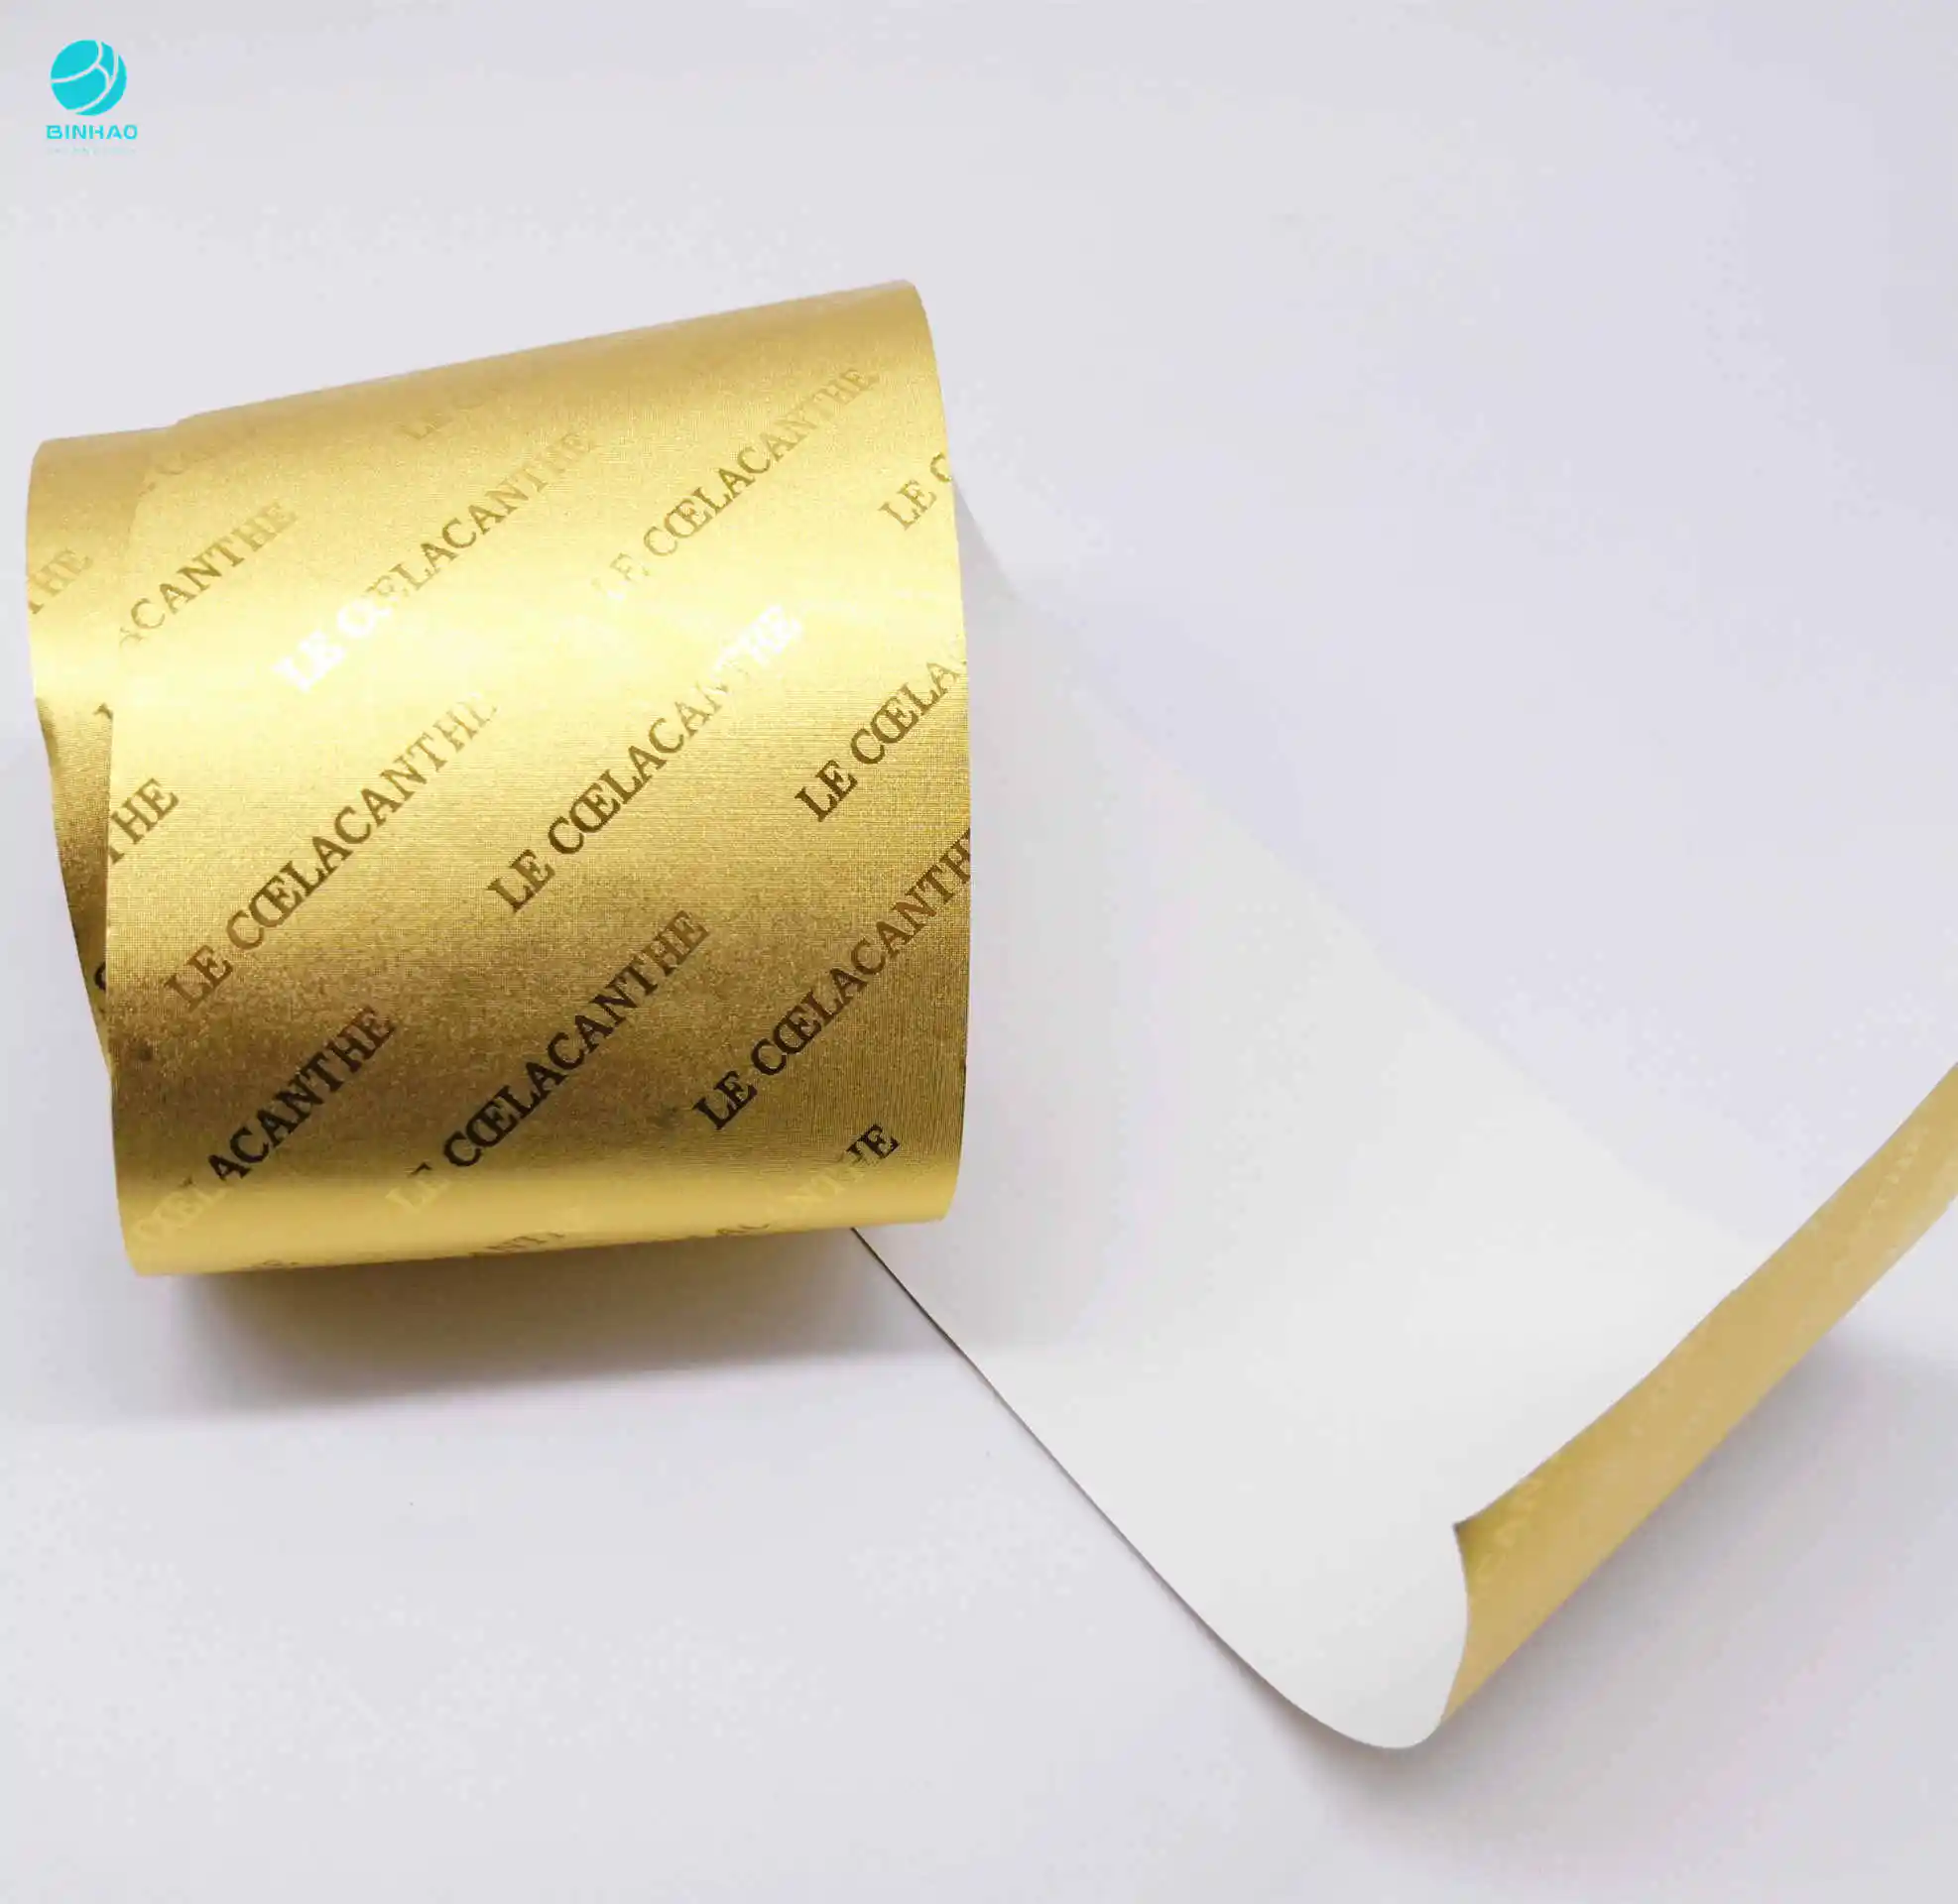 Материал упаковки: внутренняя подкладка сигареты, алюминиевая фольга, деревянная бумага